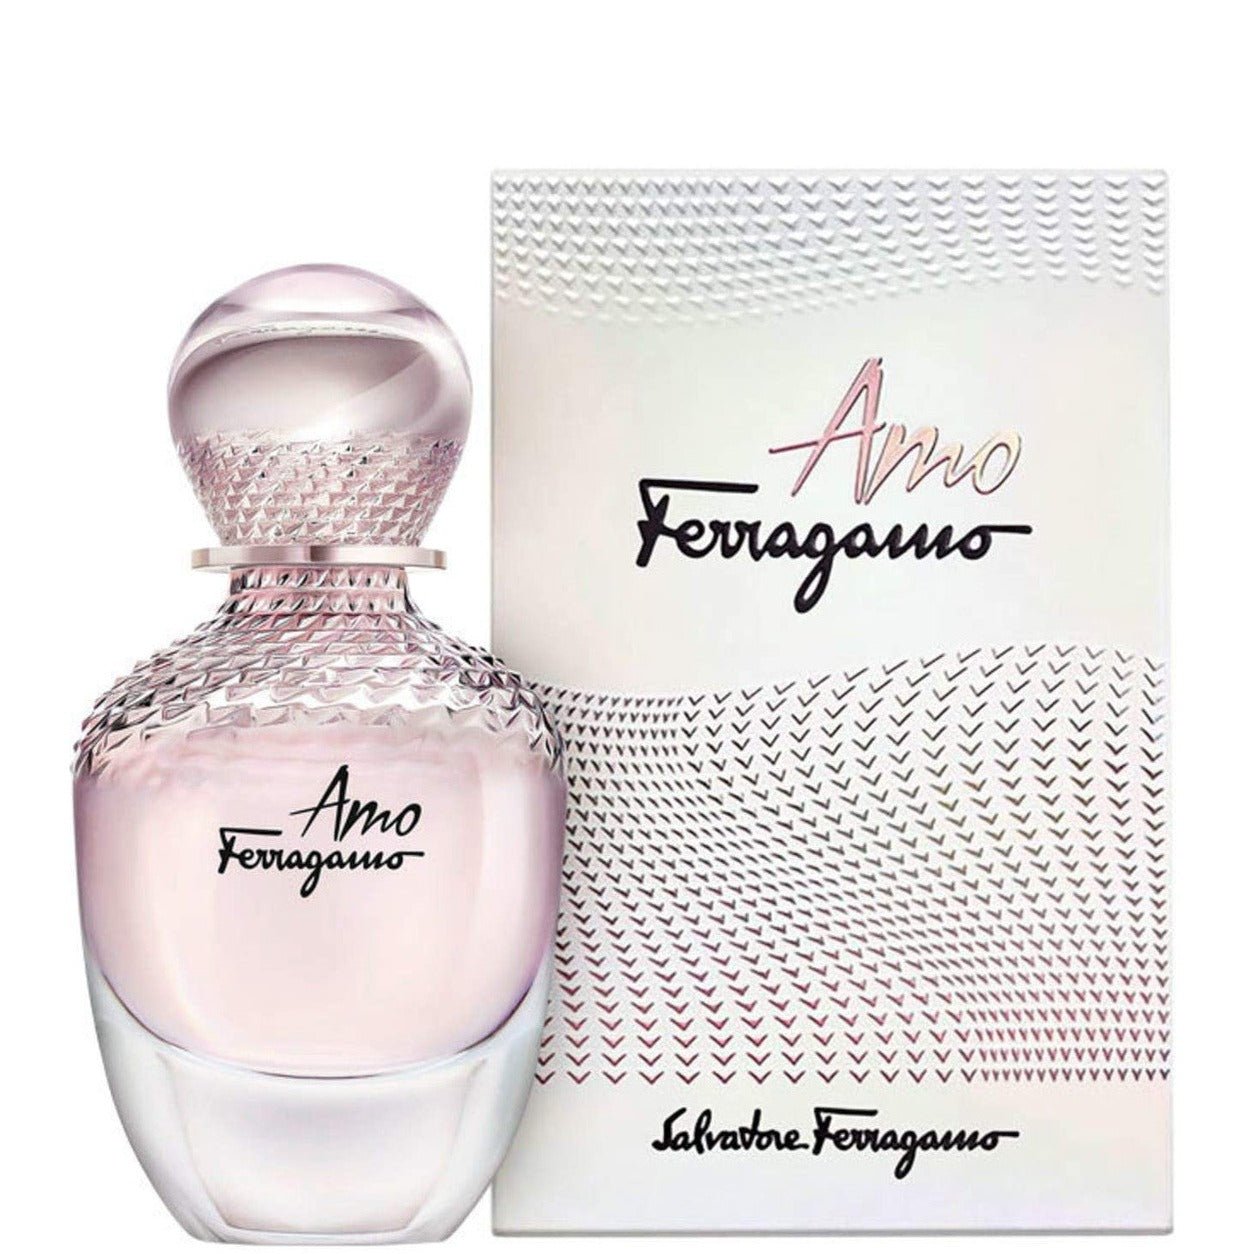 Salvatore Ferragamo Amo Ferragamo EDP | My Perfume Shop Australia